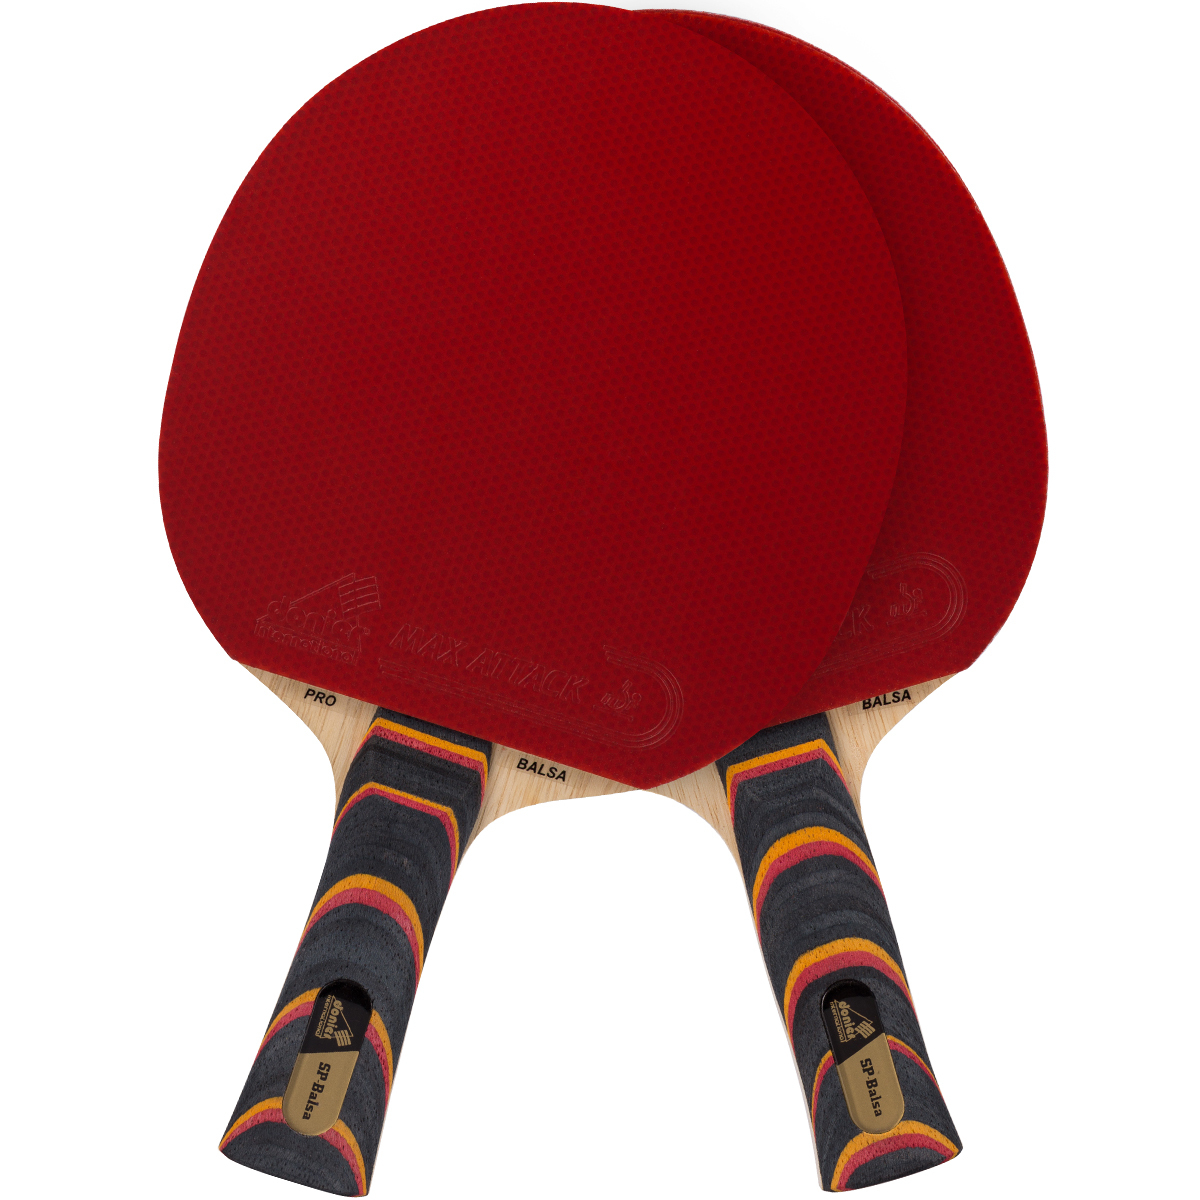 Как ухаживать за ракеткой для настольного тенниса | TTBlog клуба Пинг-Понг